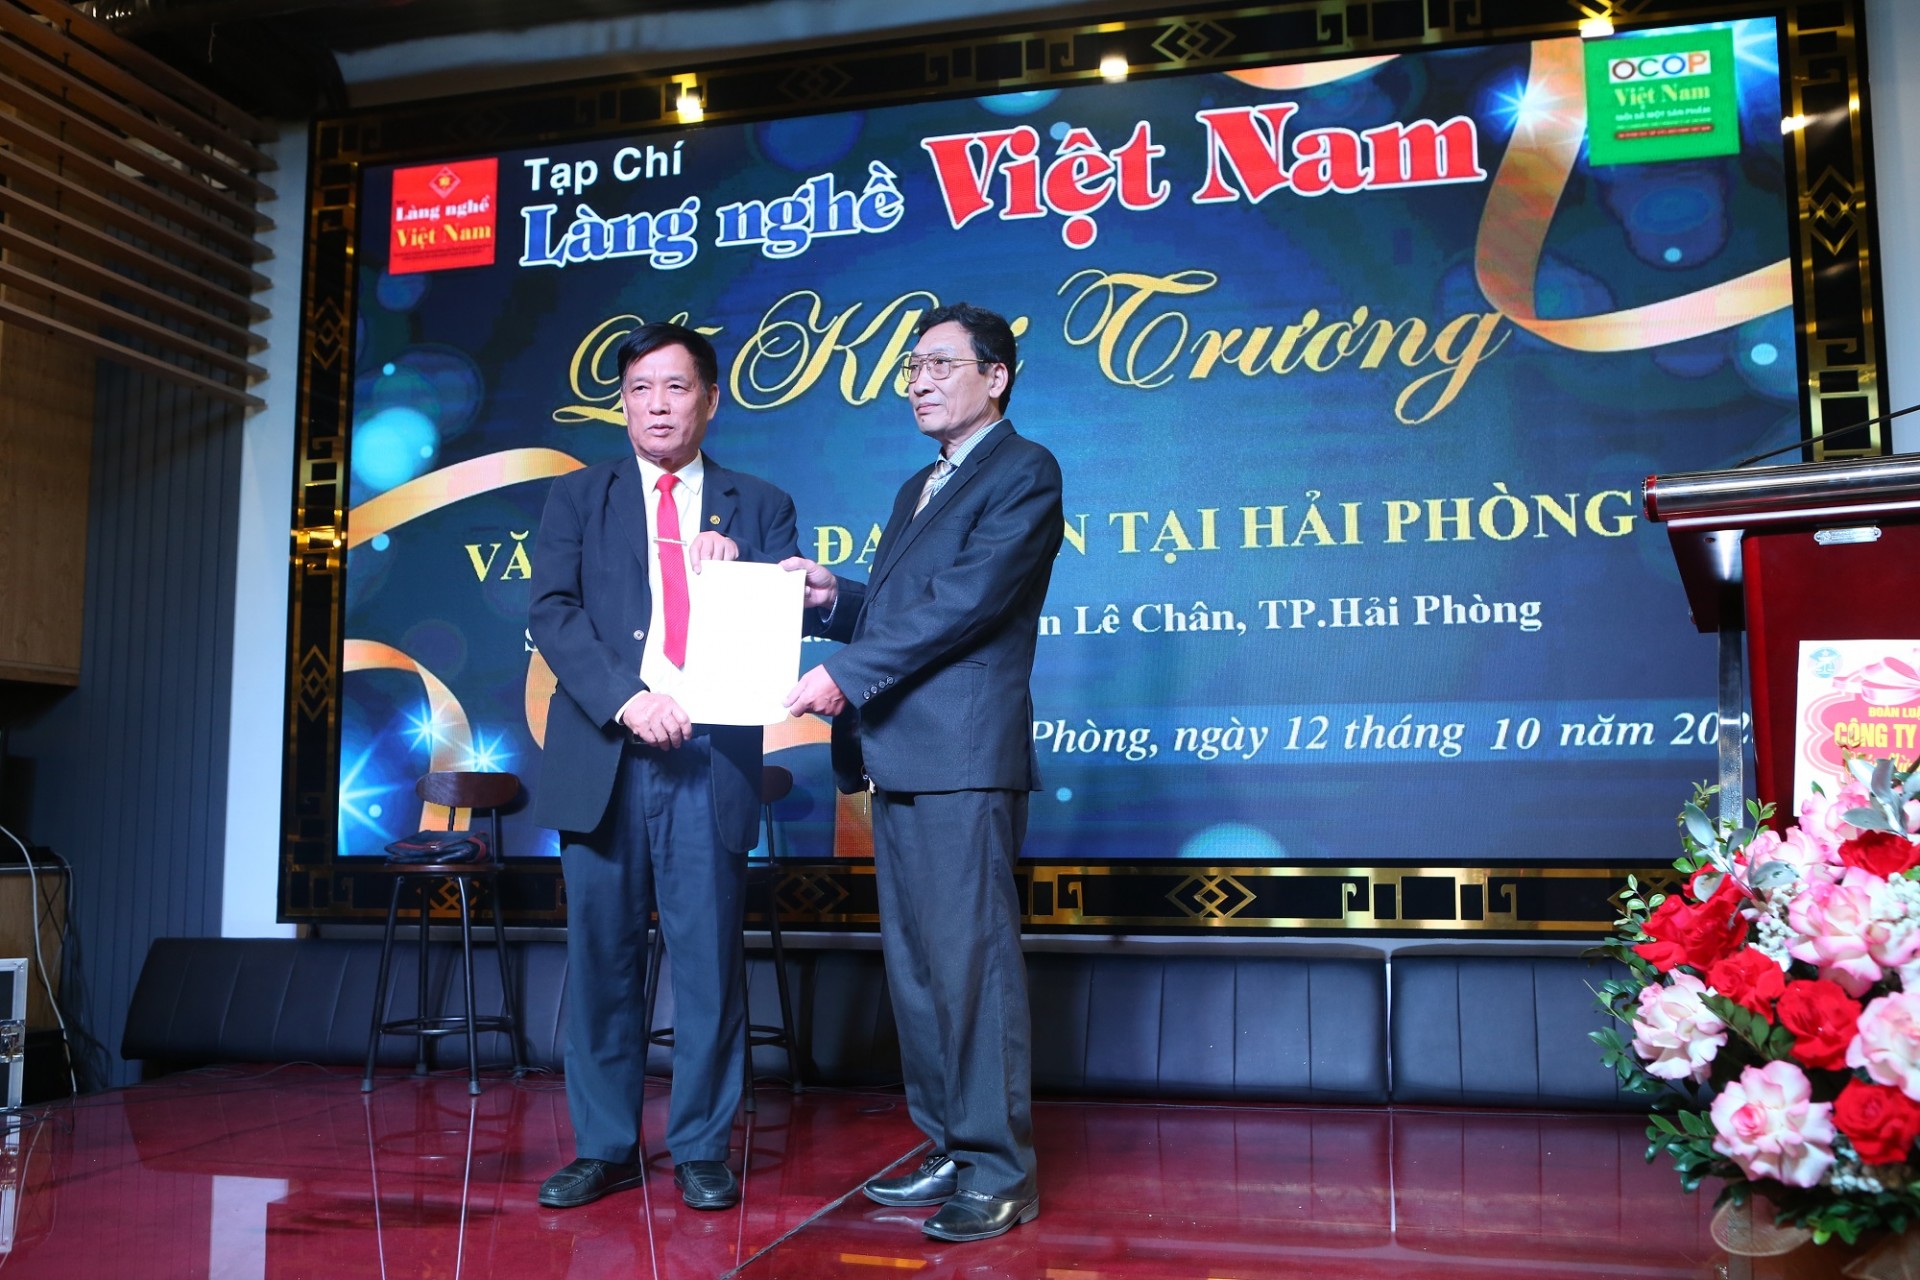 Tạp chí Làng nghề Việt Nam ra mắt Văn phòng đại diện tại Thành phố Hải Phòng